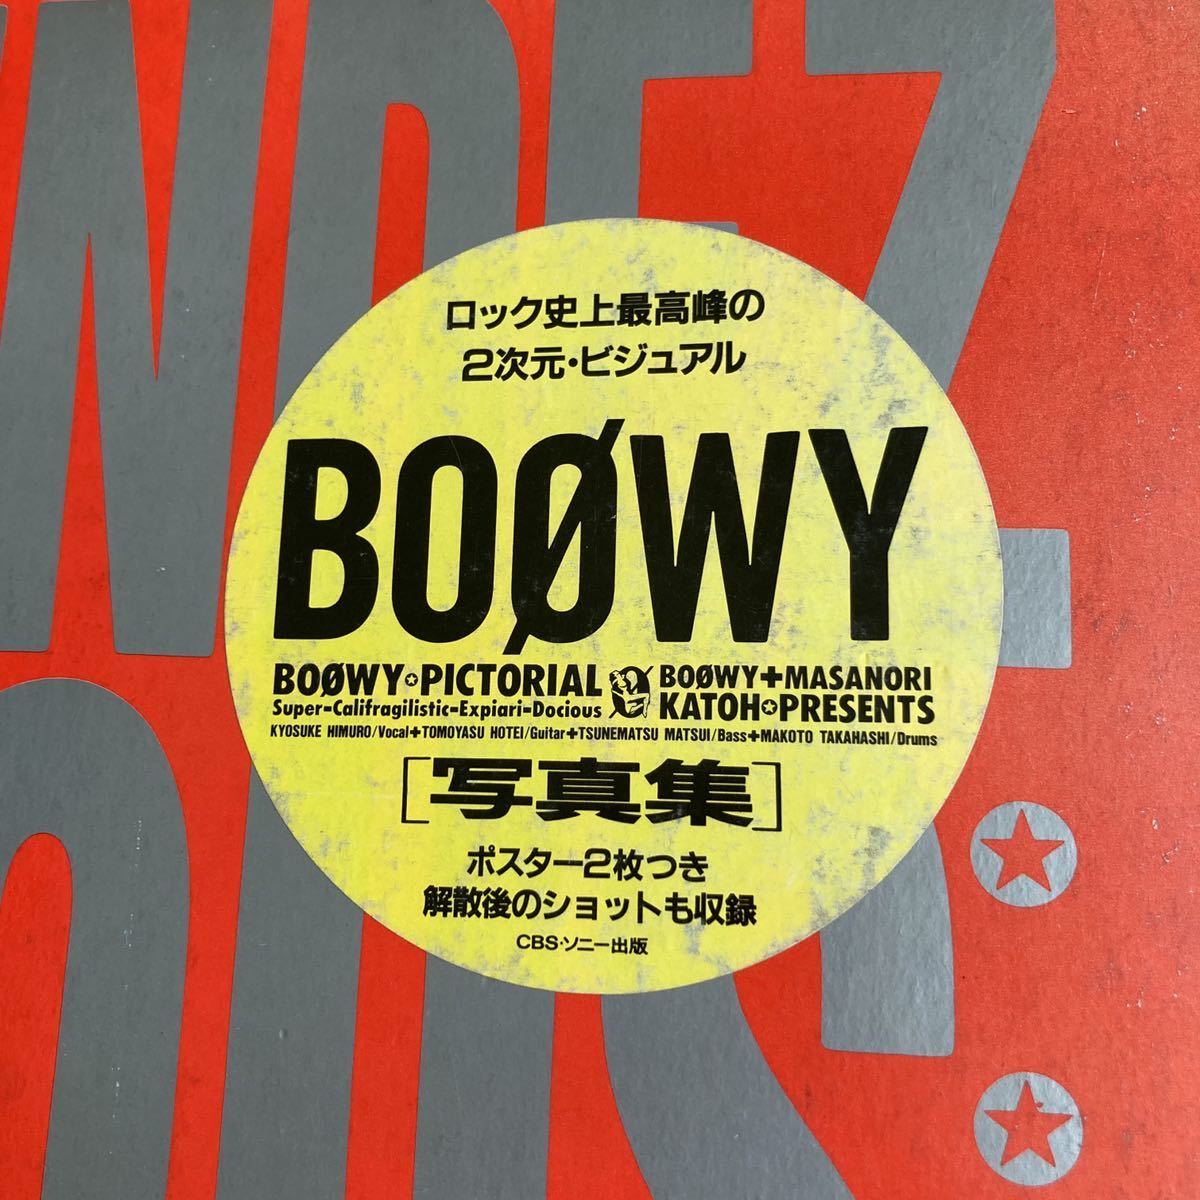  первая версия BOOWY фотоальбом RENDEZ-VOUS привилегия постер 2 листов с футляром Himuro Kyosuke Hotei Tomoyasu Matsui Tsunematsu высота ....